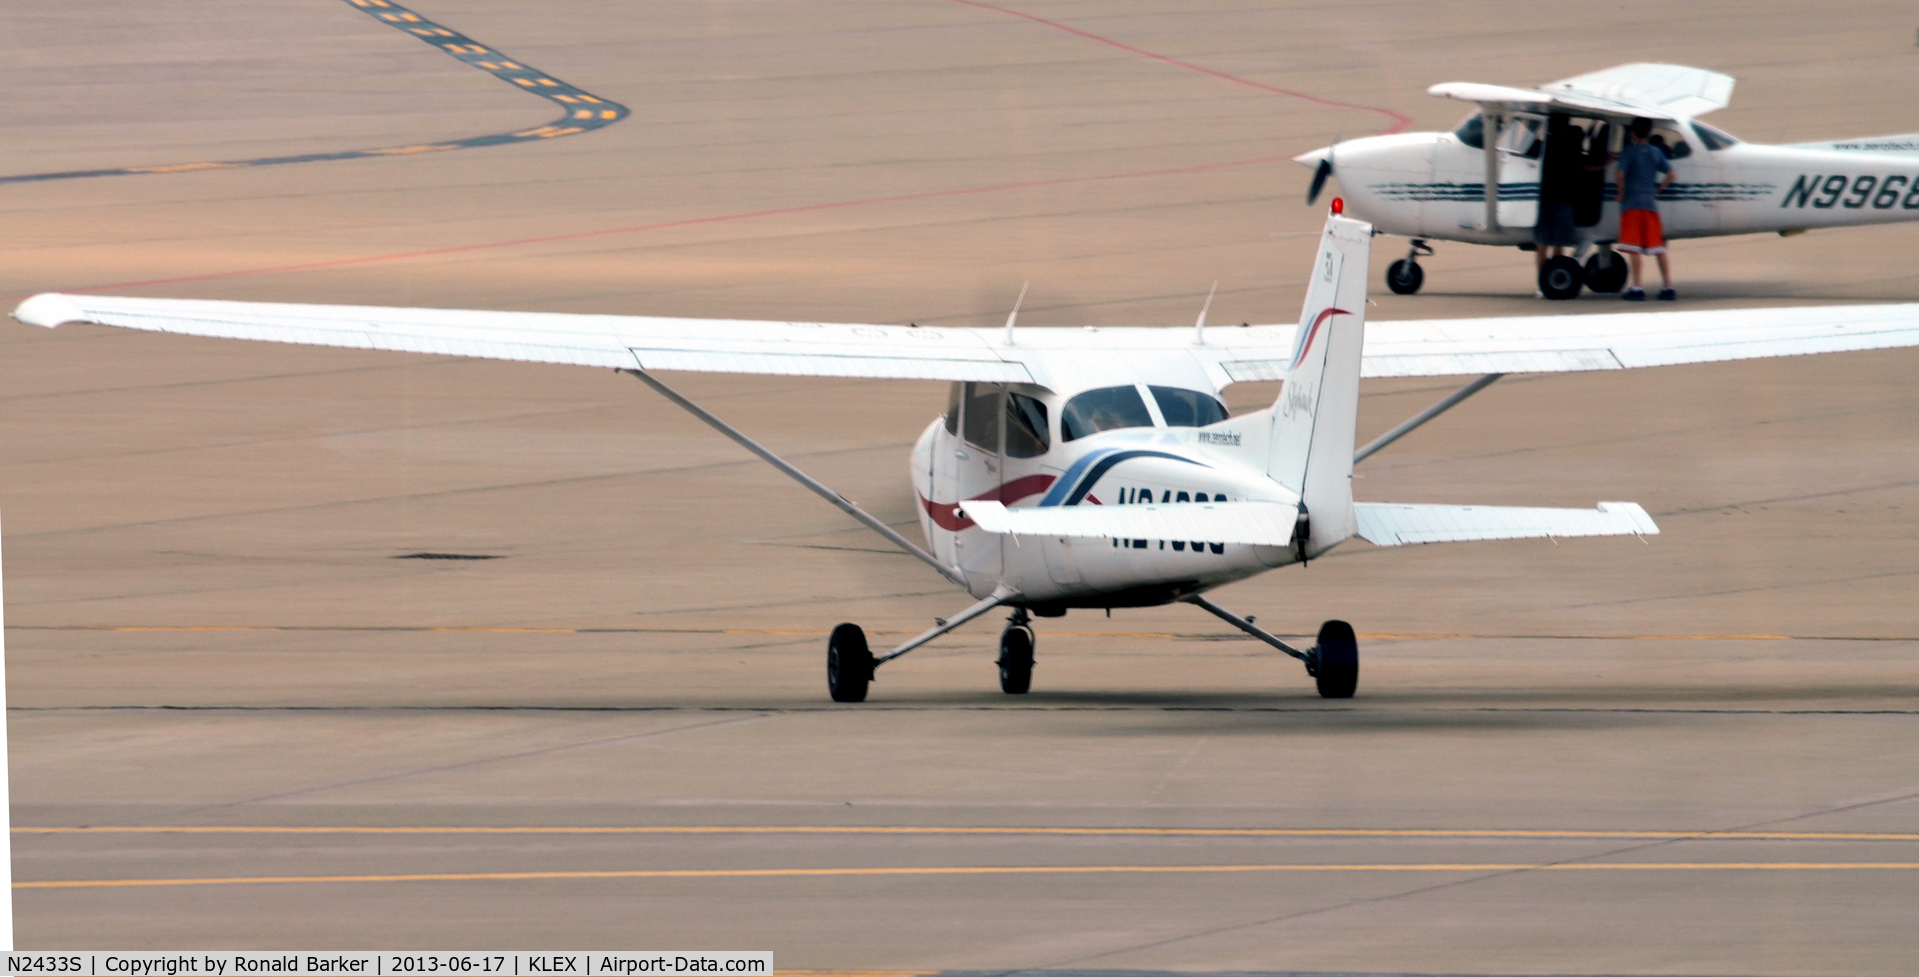 N2433S, 2000 Cessna 172R C/N 17280872, Taxi LEX